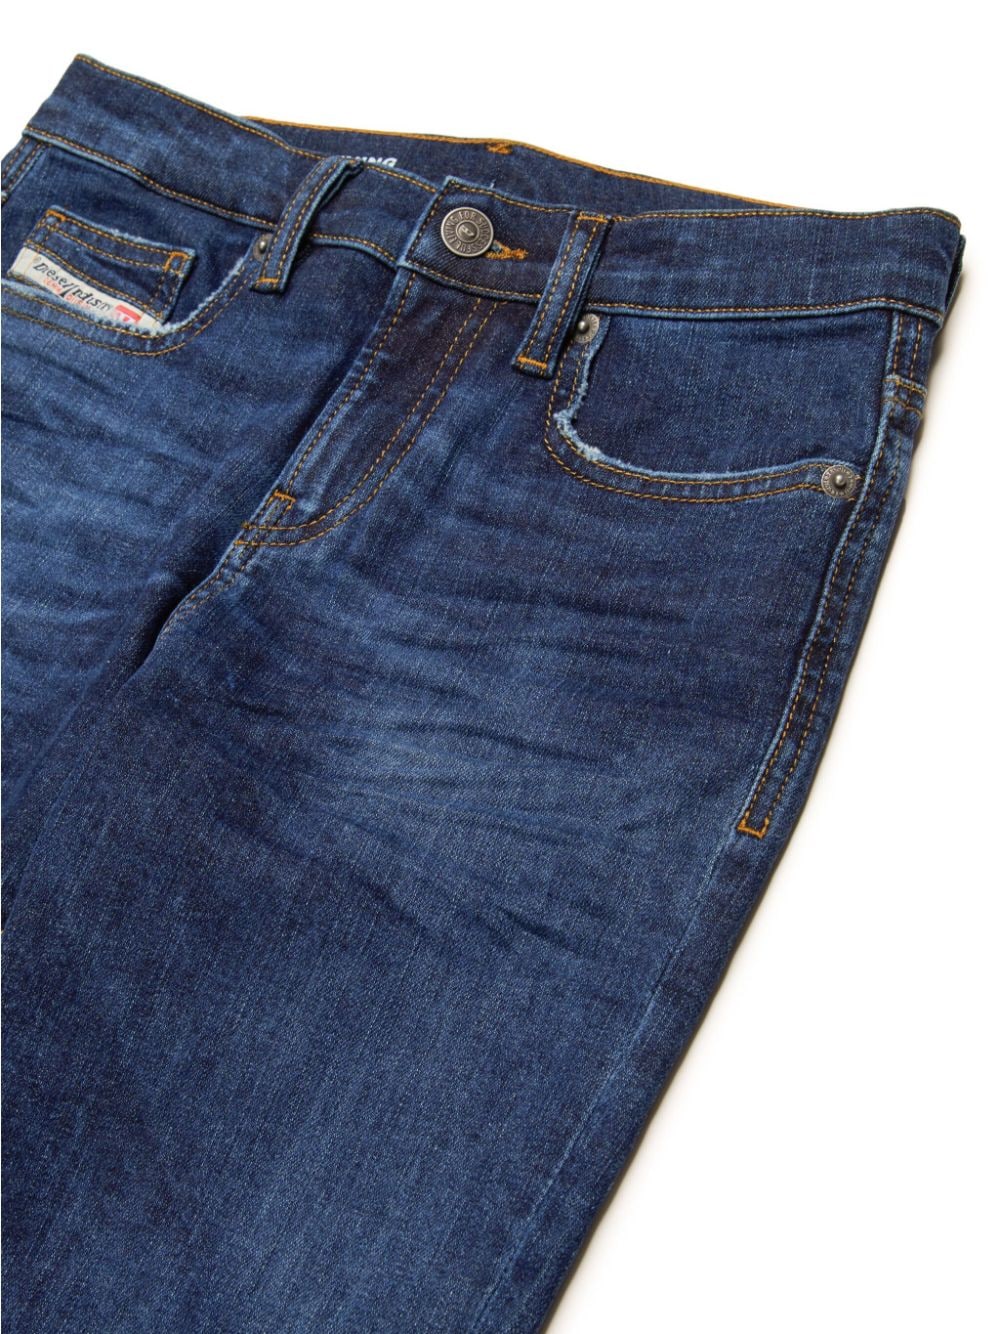 Dark blue cotton jeans for children